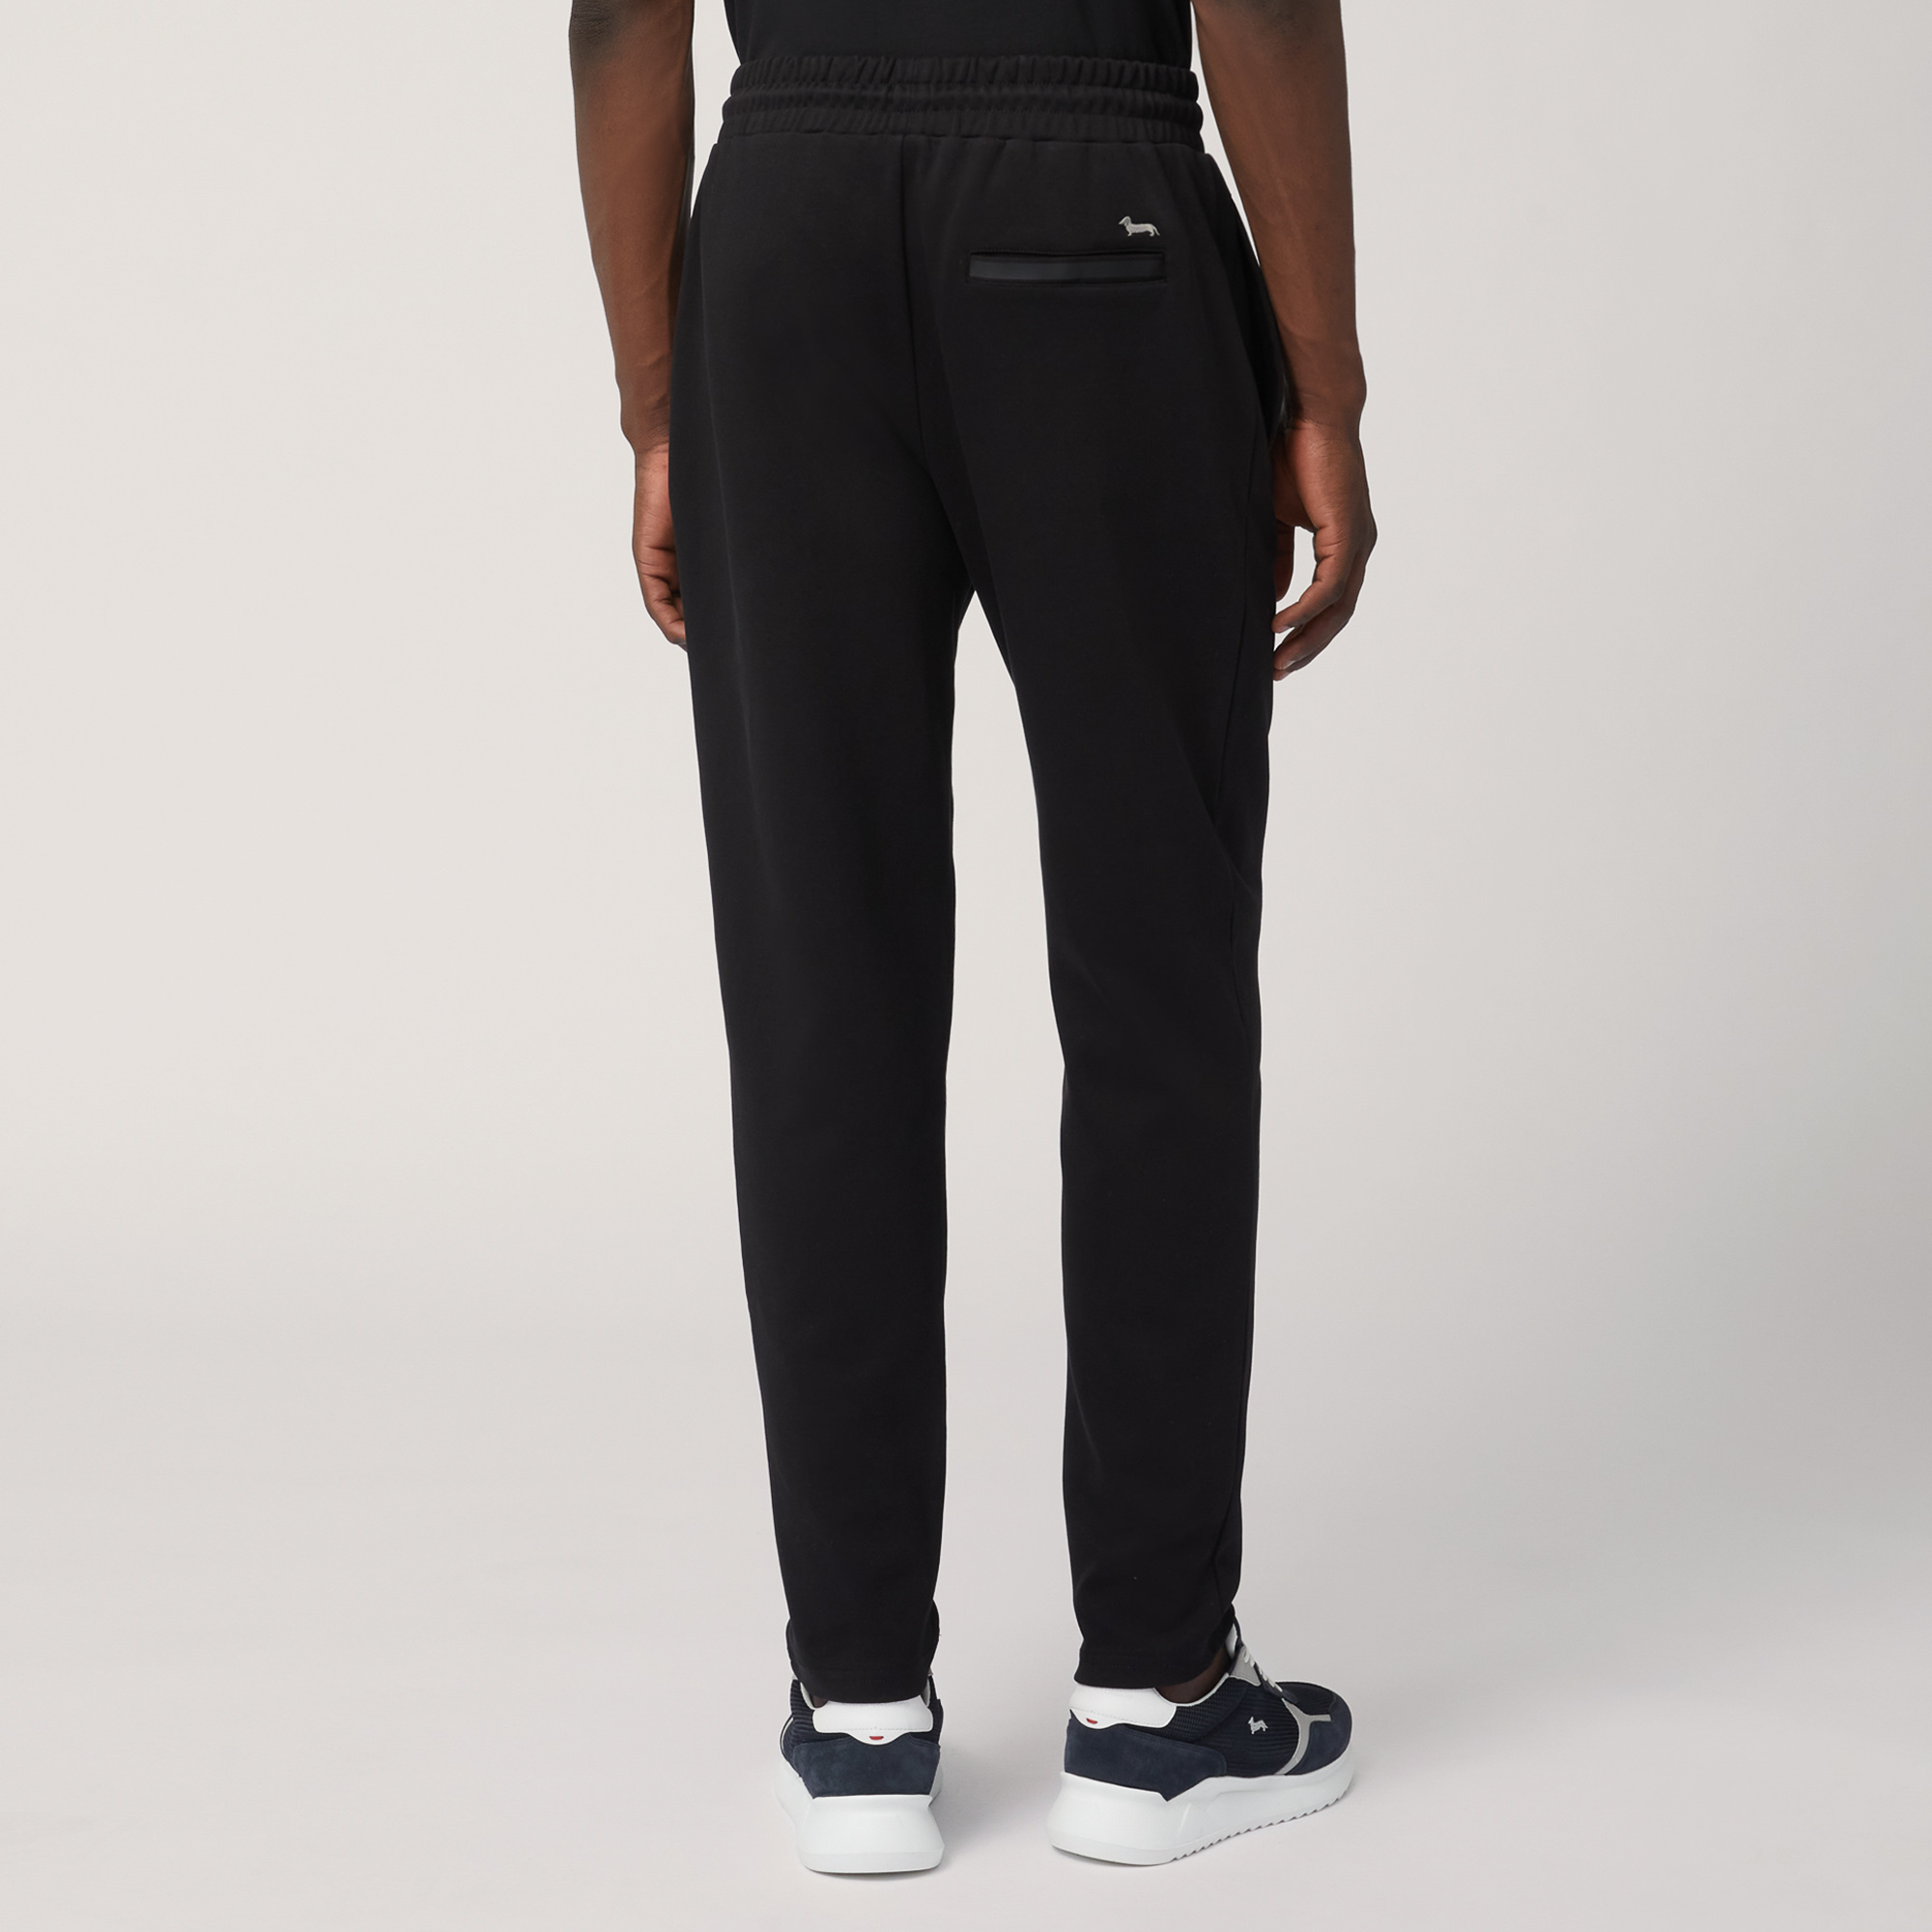 Cotton Pants with Back Pocket, Black, large image number 1